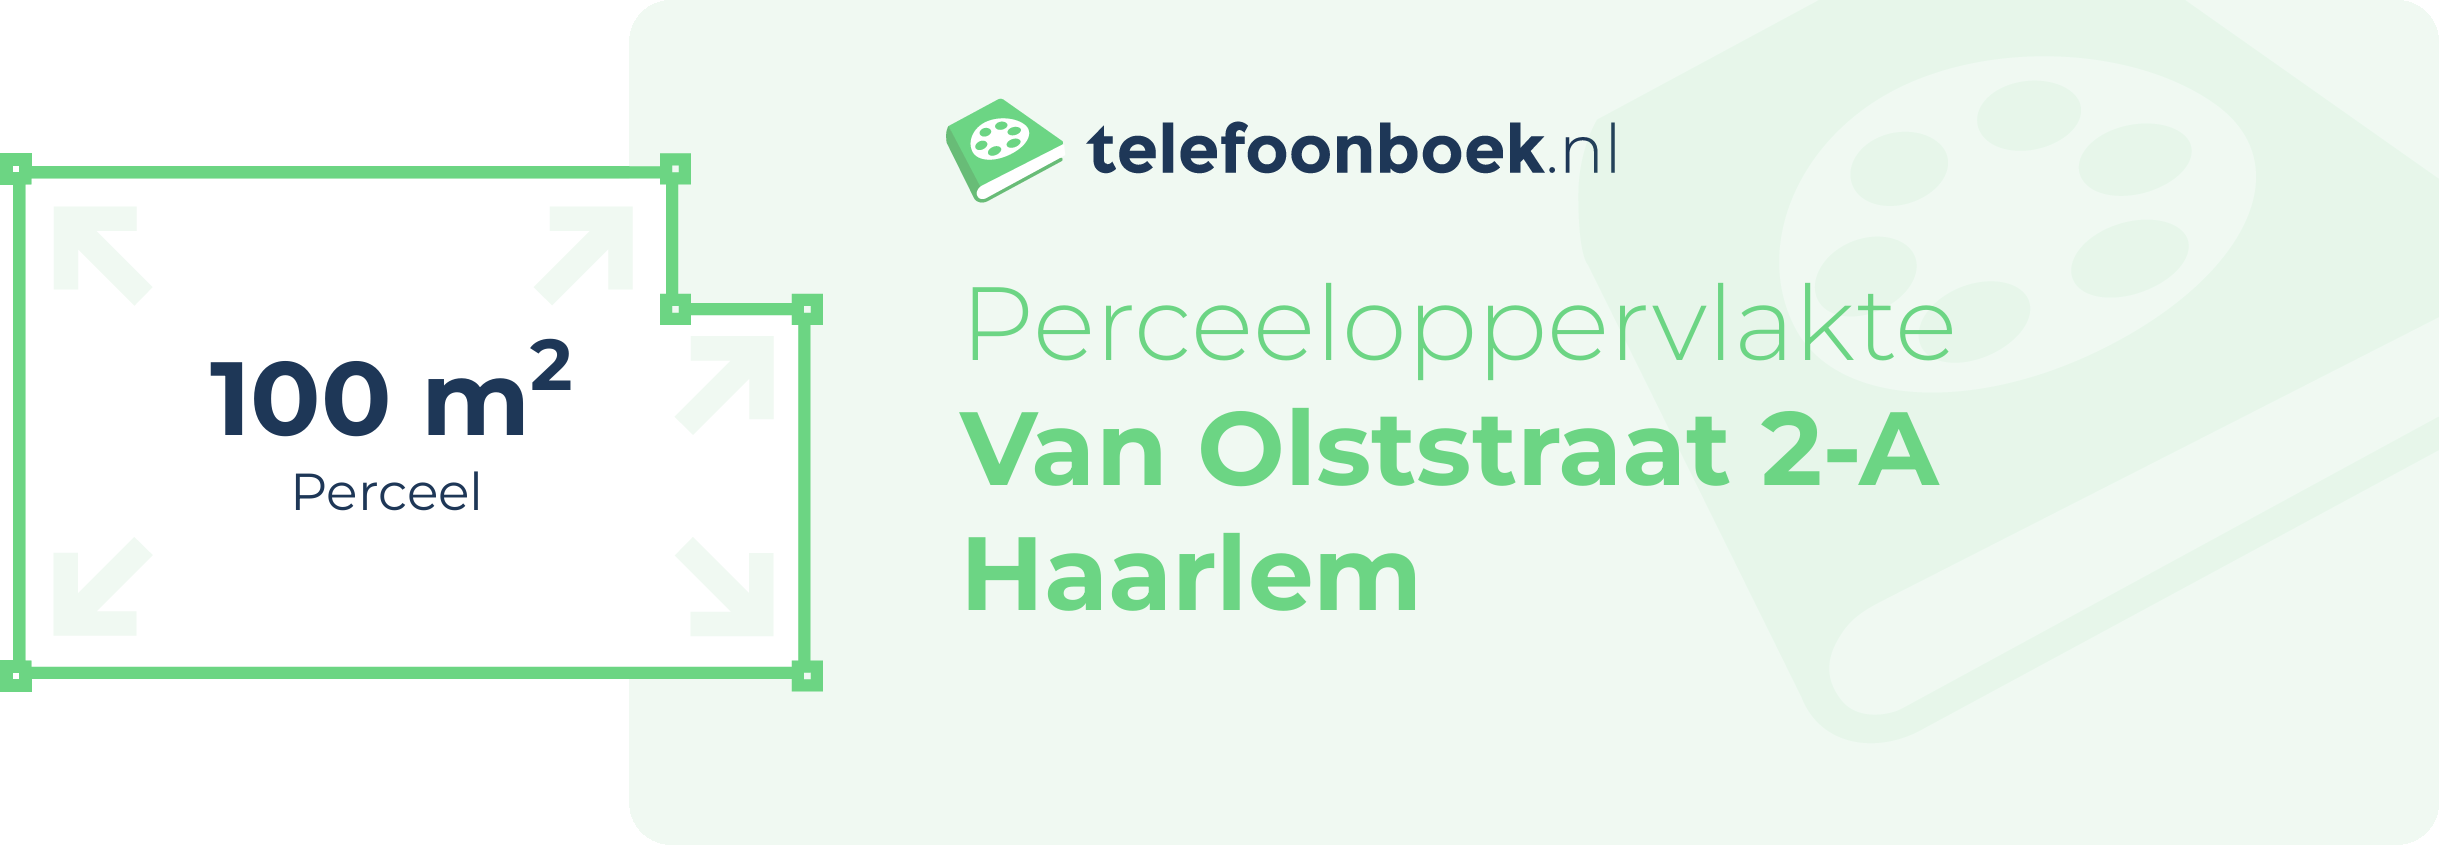 Perceeloppervlakte Van Olststraat 2-A Haarlem